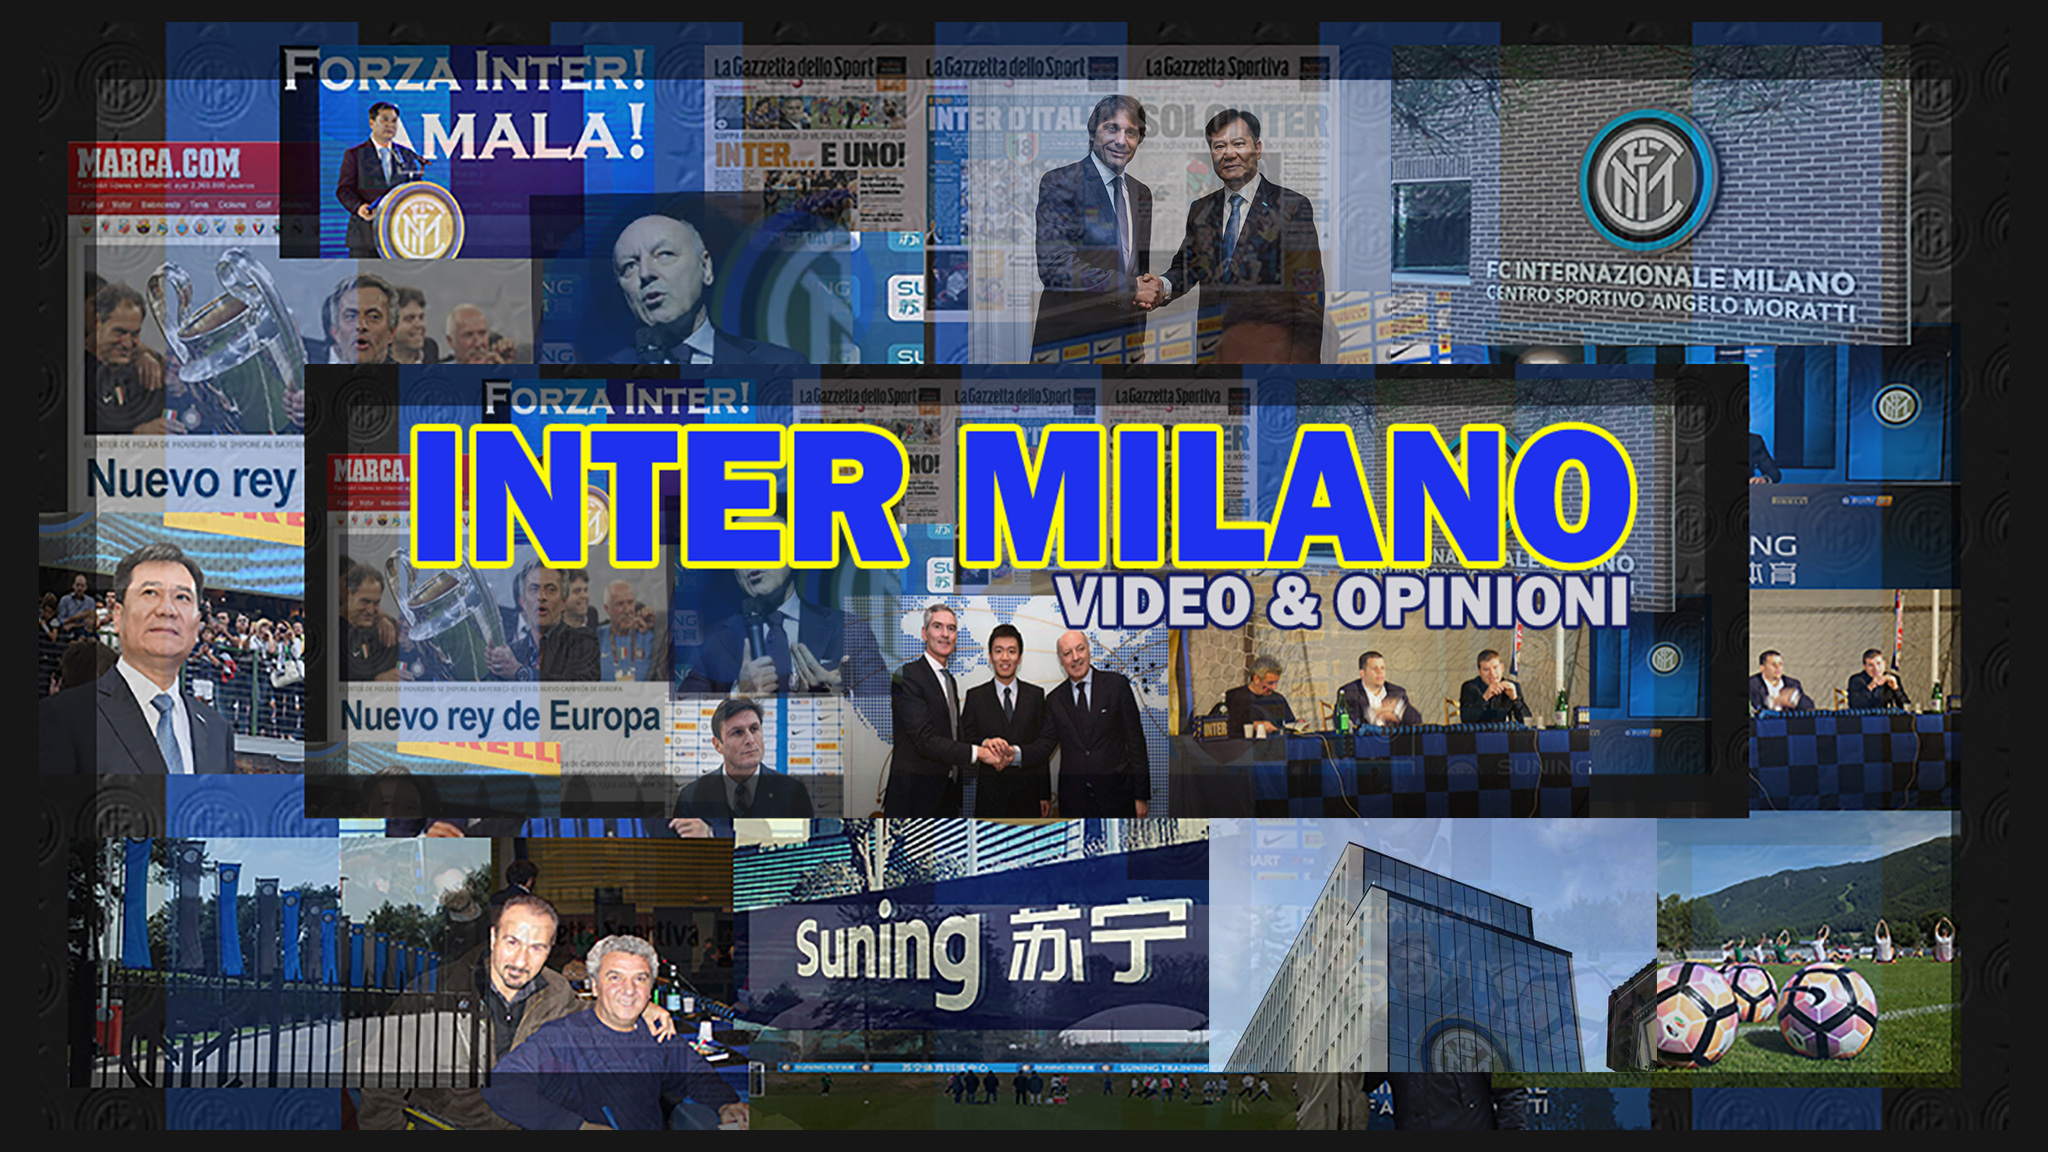 Inter Milano Video & Opinioni